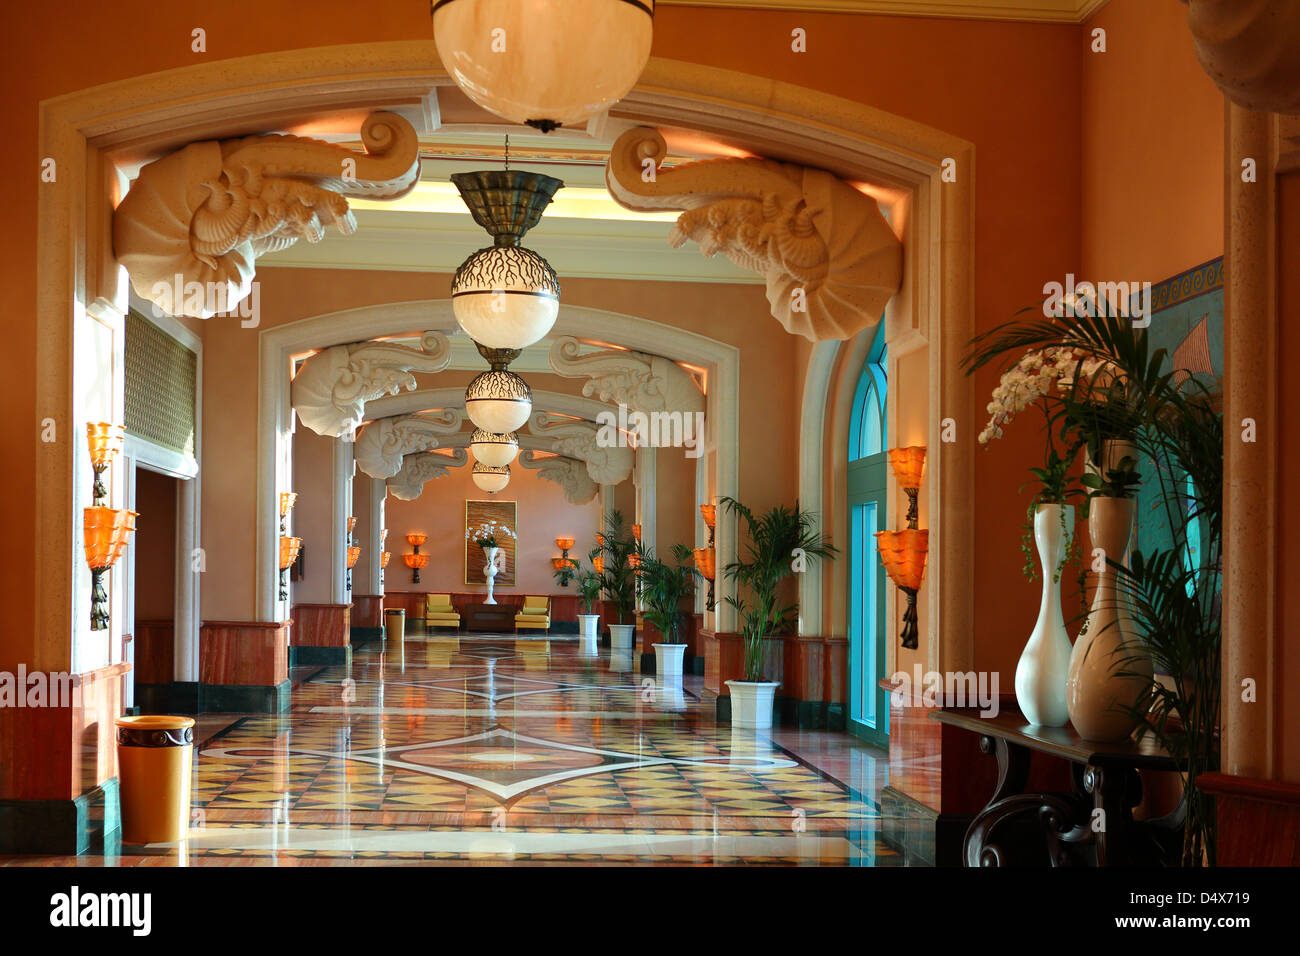 Atlantis hotel interior, Dubai, United Arab Emirates Stock Photo